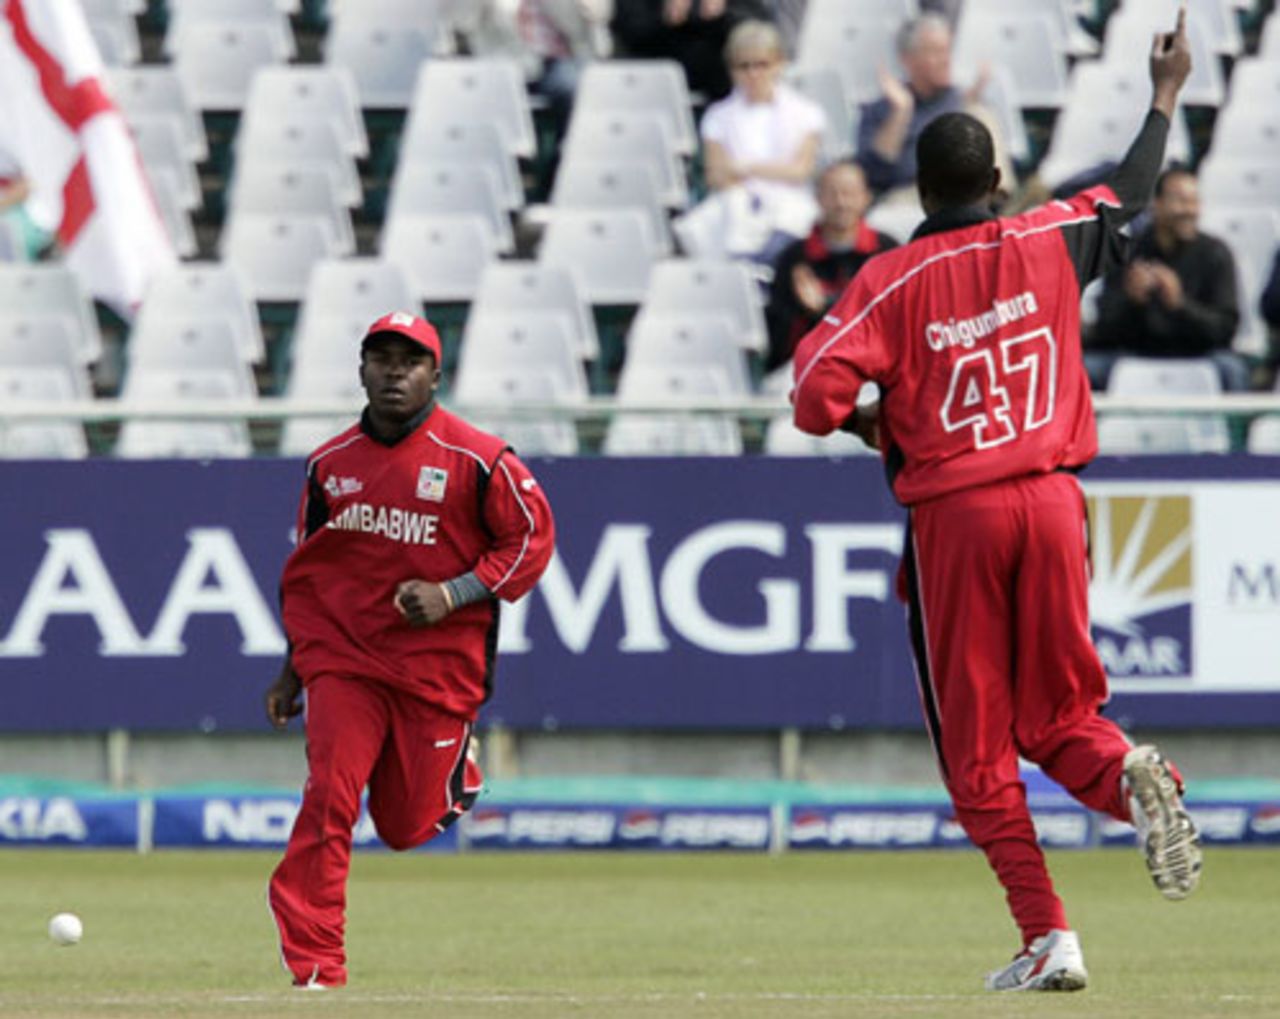 Elton Chigumbura and Stuart Matsikenyeri celebrate the dismissal of Darren Maddy, England v Zimbabwe, Group B, ICC World Twenty20, Cape Town, September 13, 2007